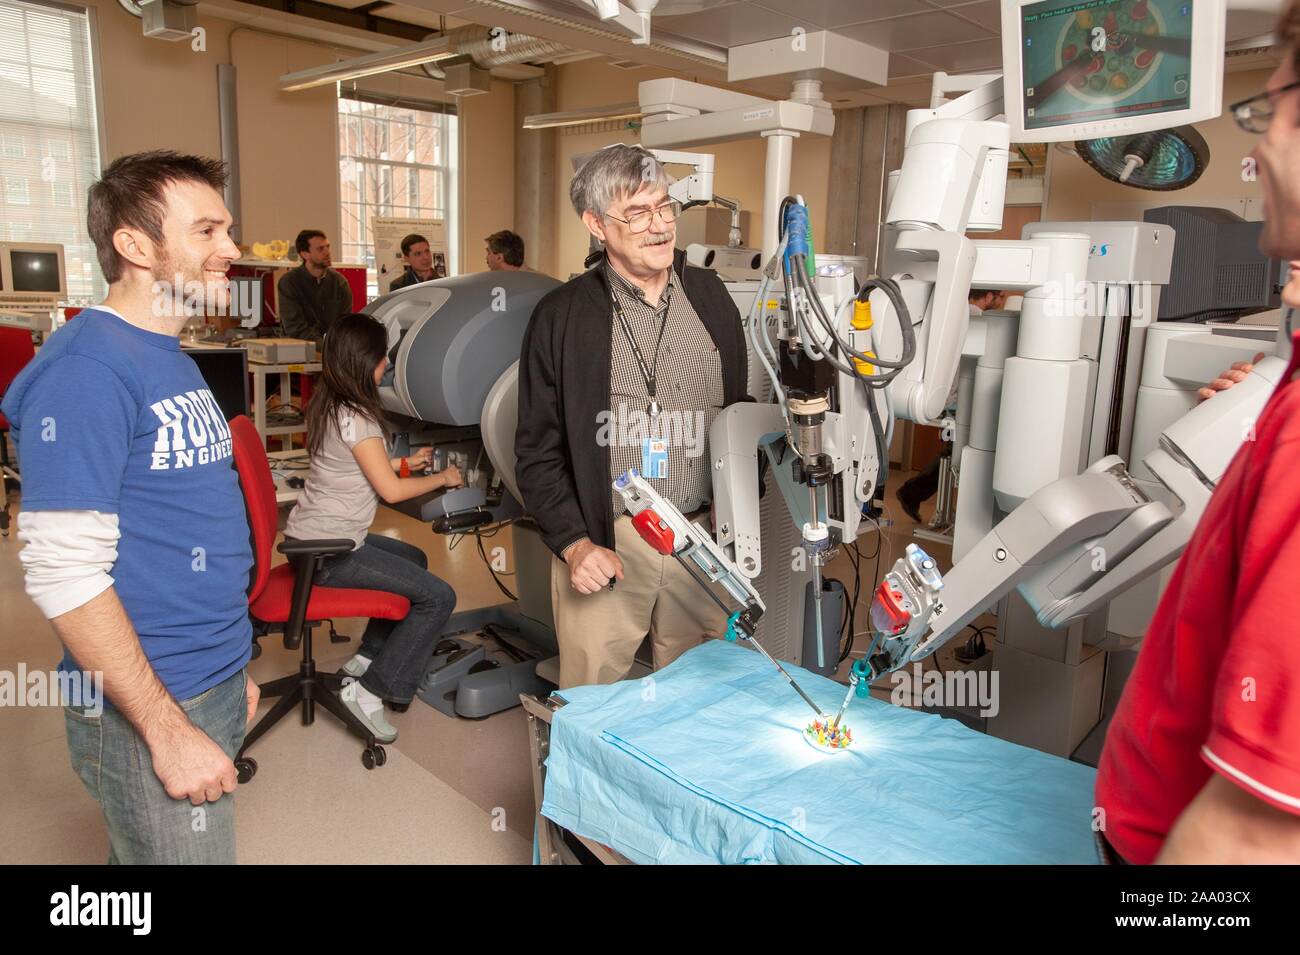 Professeur d'informatique, Russell Taylor, discute avec des étudiants en génie de l'École de merlan tandis qu'un robot chirurgical da Vinci travaille dans une fausse salle d'opération à la Johns Hopkins University, Baltimore, Maryland, le 6 avril 2009. À partir de la collection photographique de Homewood. () Banque D'Images